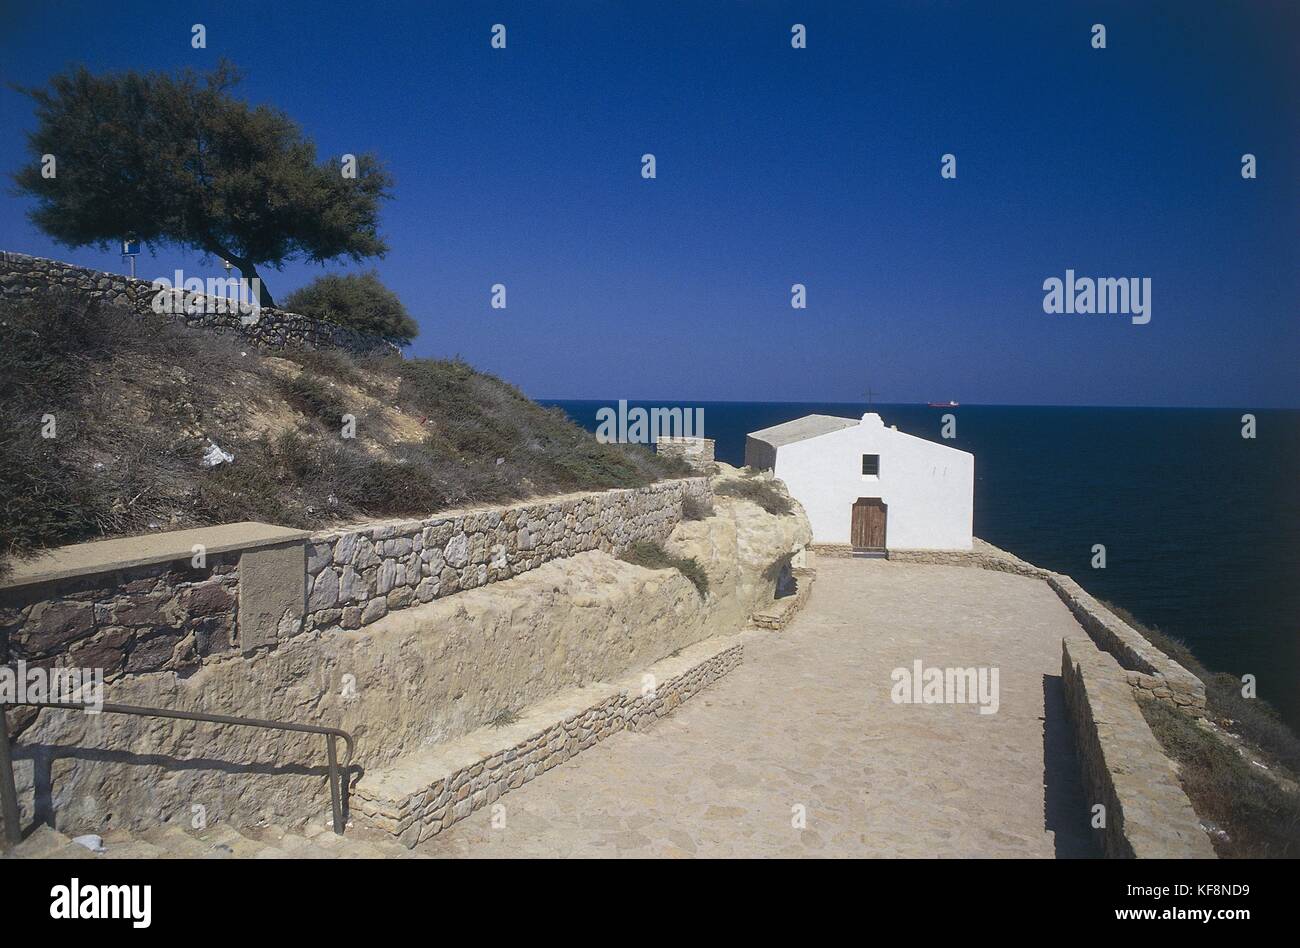 Italy, Sardinia Region, Porto Torres, Church of San Gavino at Sea Stock Photo